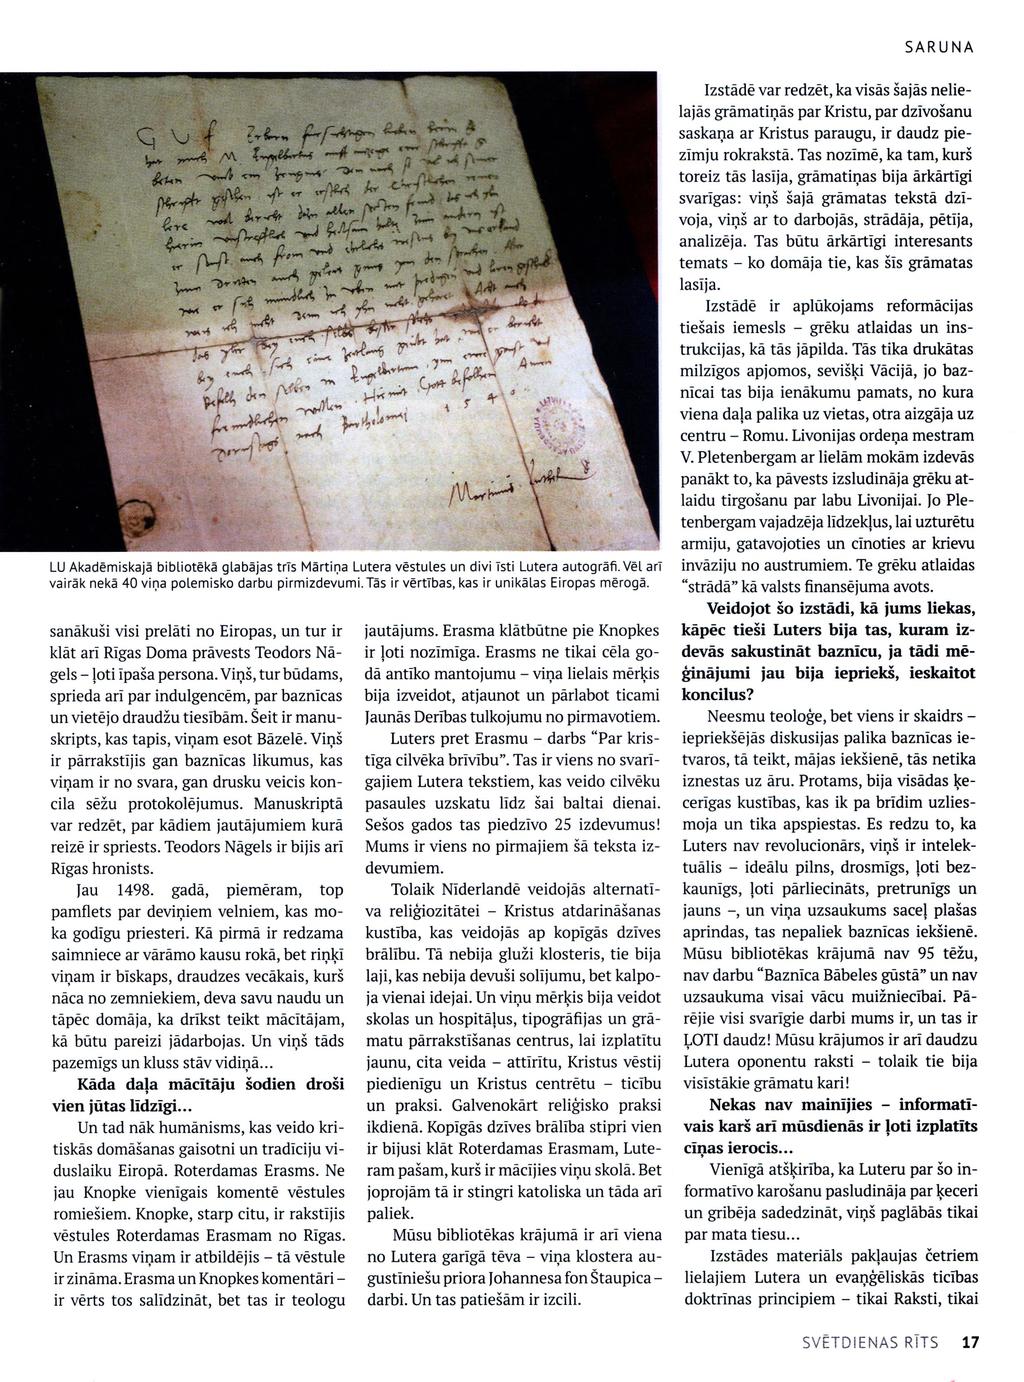 LU Akadēmiskajā bibliotēka glabājas trīs Mārtiņa Lutera vēstules un divi īsti Lutera autogrāfi. Vēl arī vairāk nekā 40 viņa polemisko darbu pirmizdevumi.